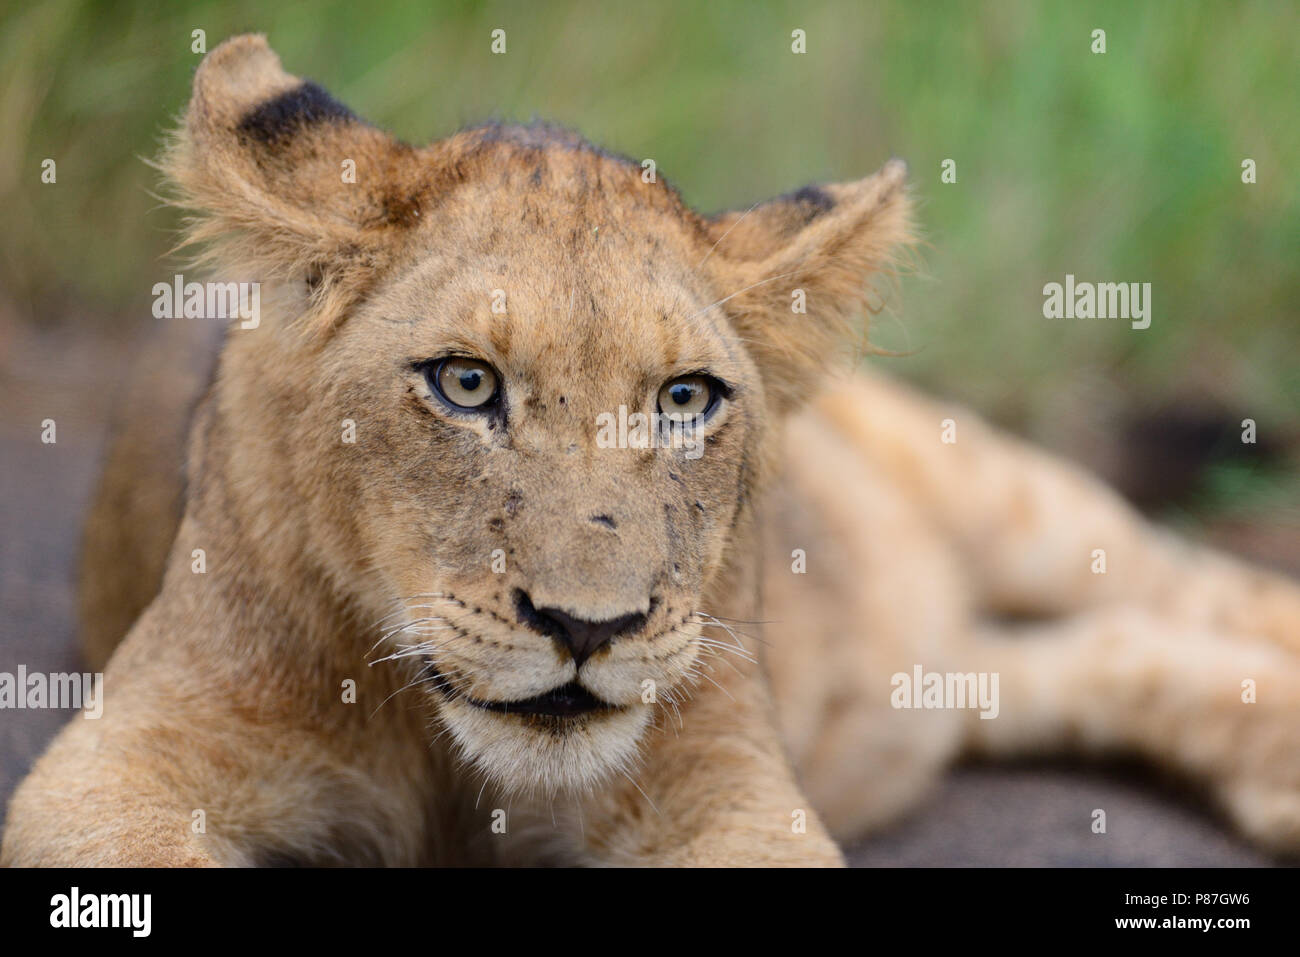 Baby lion cub portrait close up Stock Photo